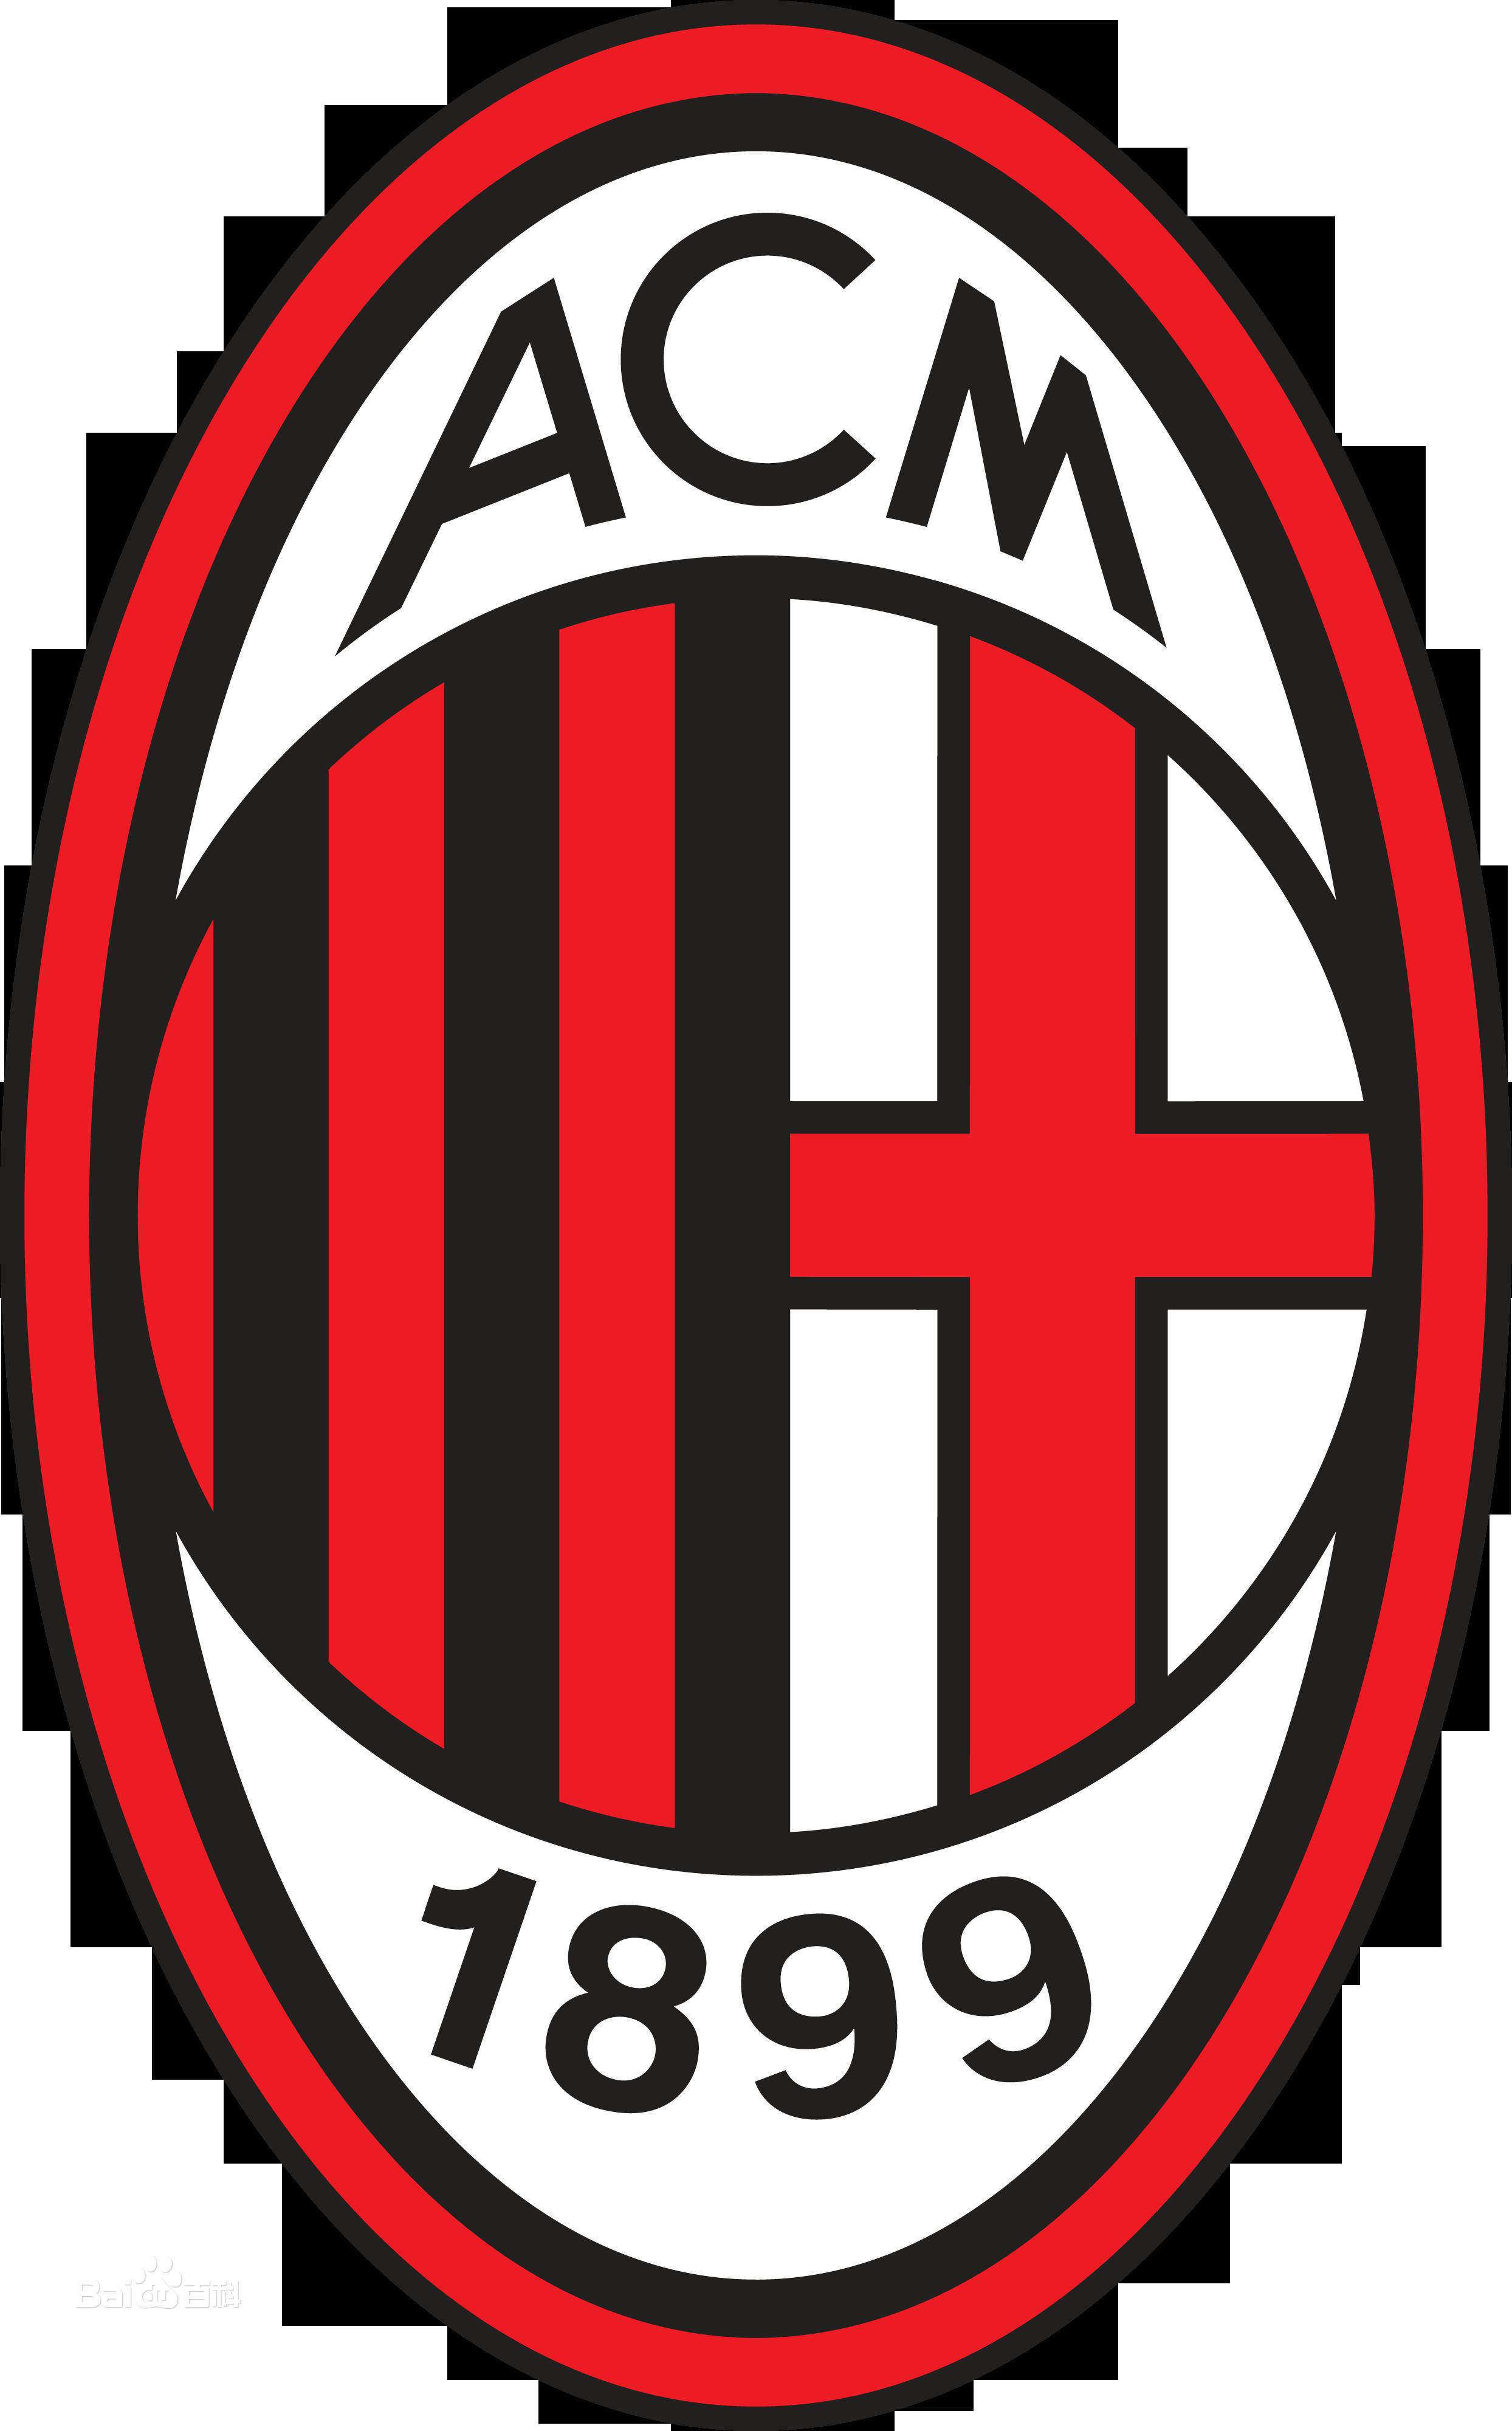 意甲球队队徽变化 新赛季意甲球队队徽(12)